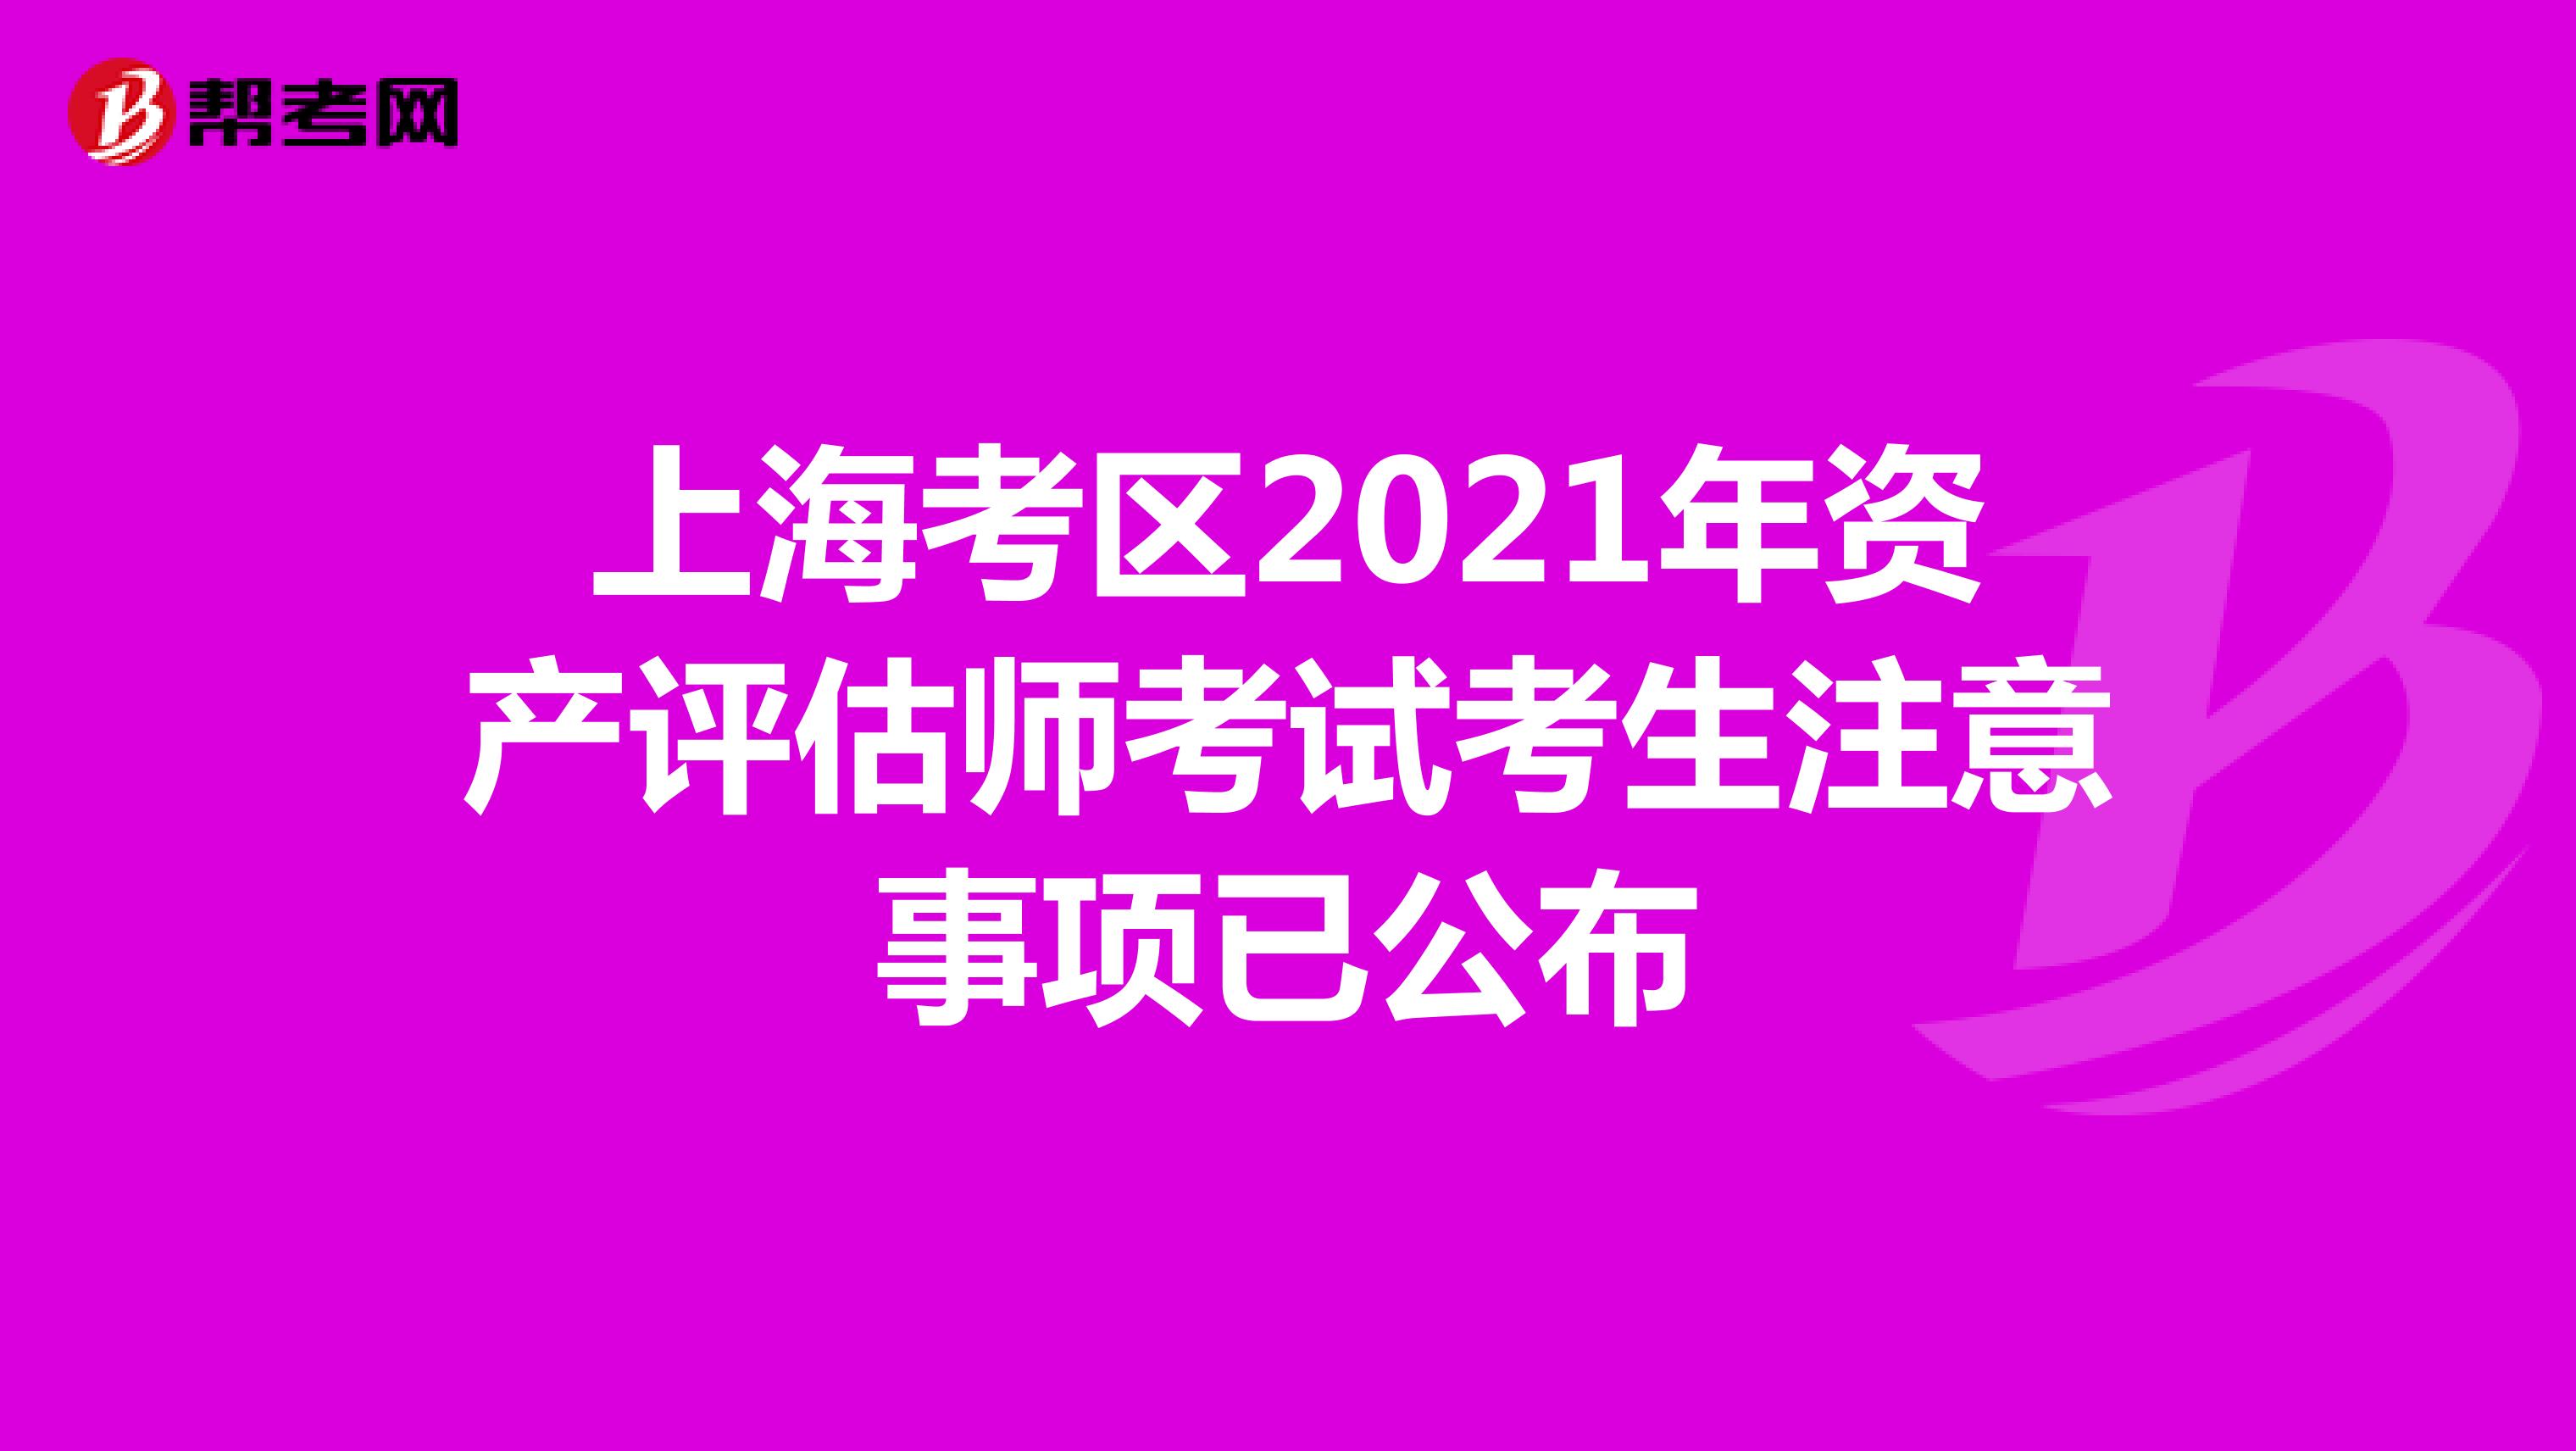 上海考区2021年资产评估师考试考生注意事项已公布